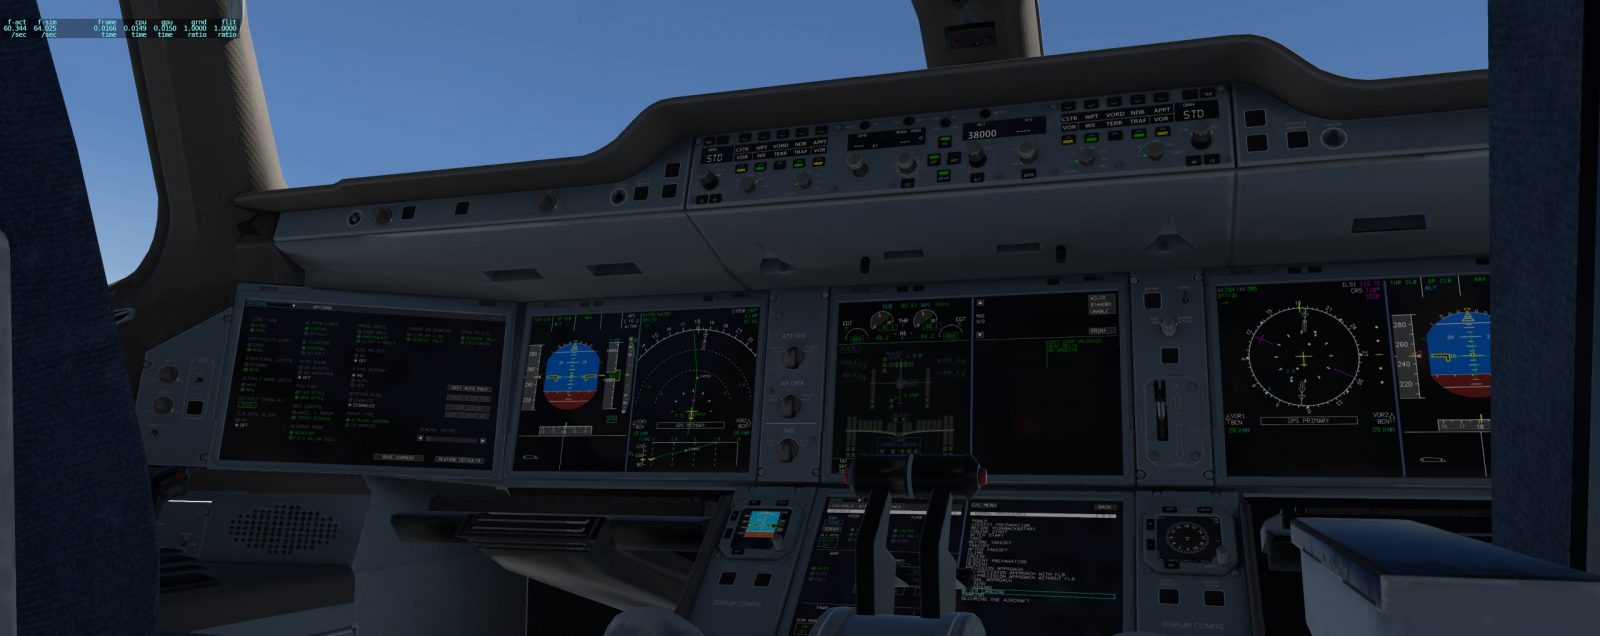 A350驾驶舱-6964 